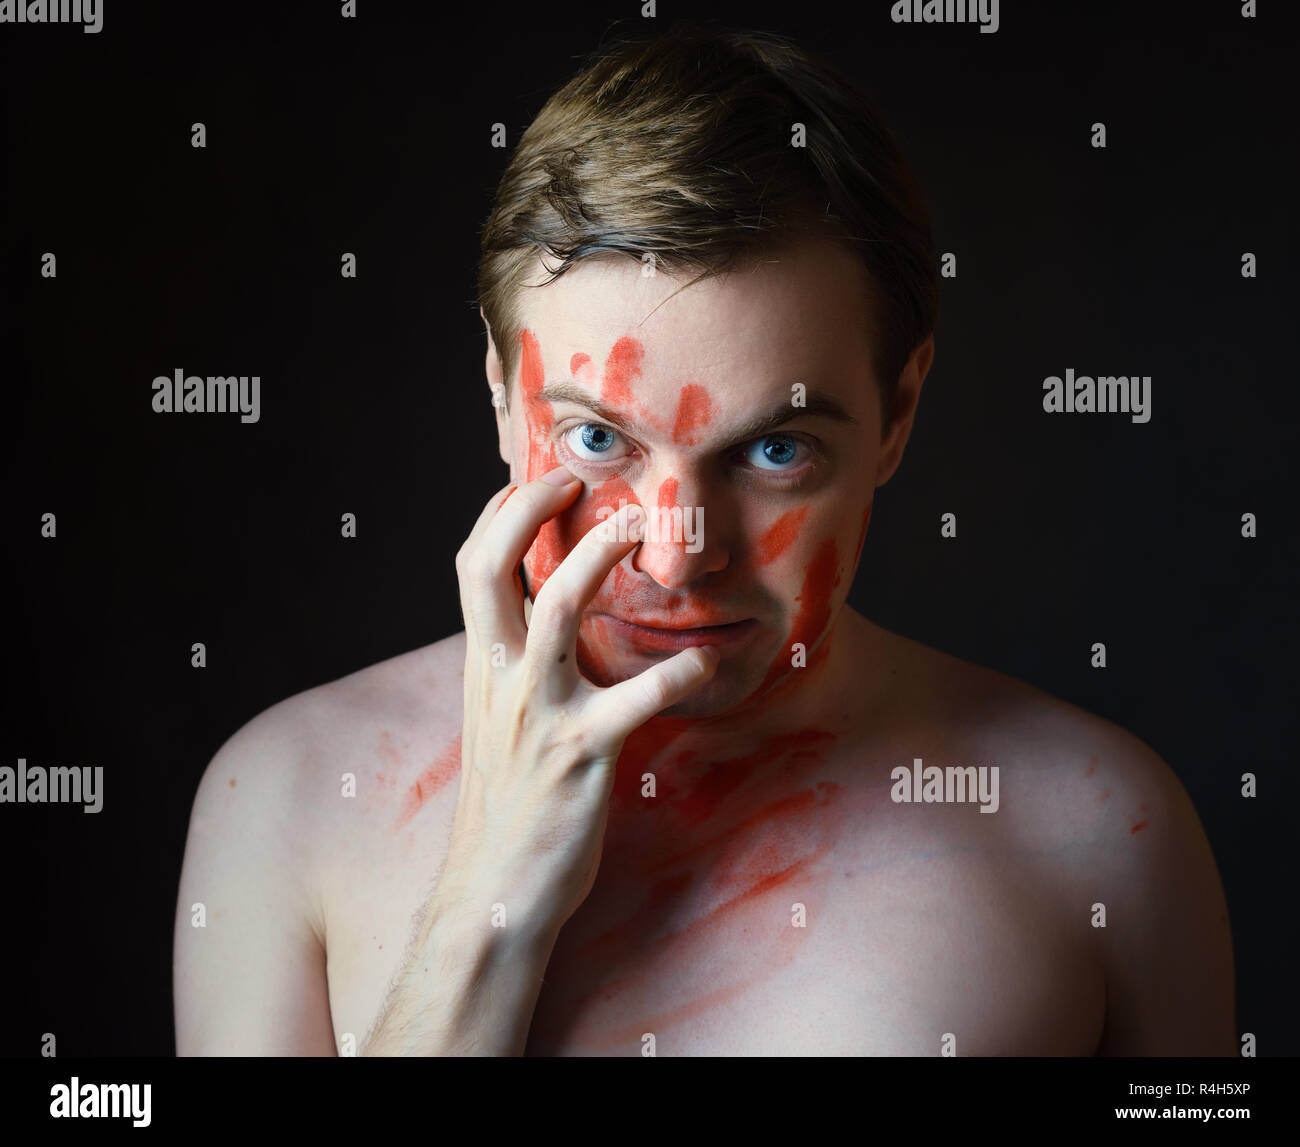 Portrait de jeune homme avec du sang sur son visage et palm sur fond sombre. Banque D'Images